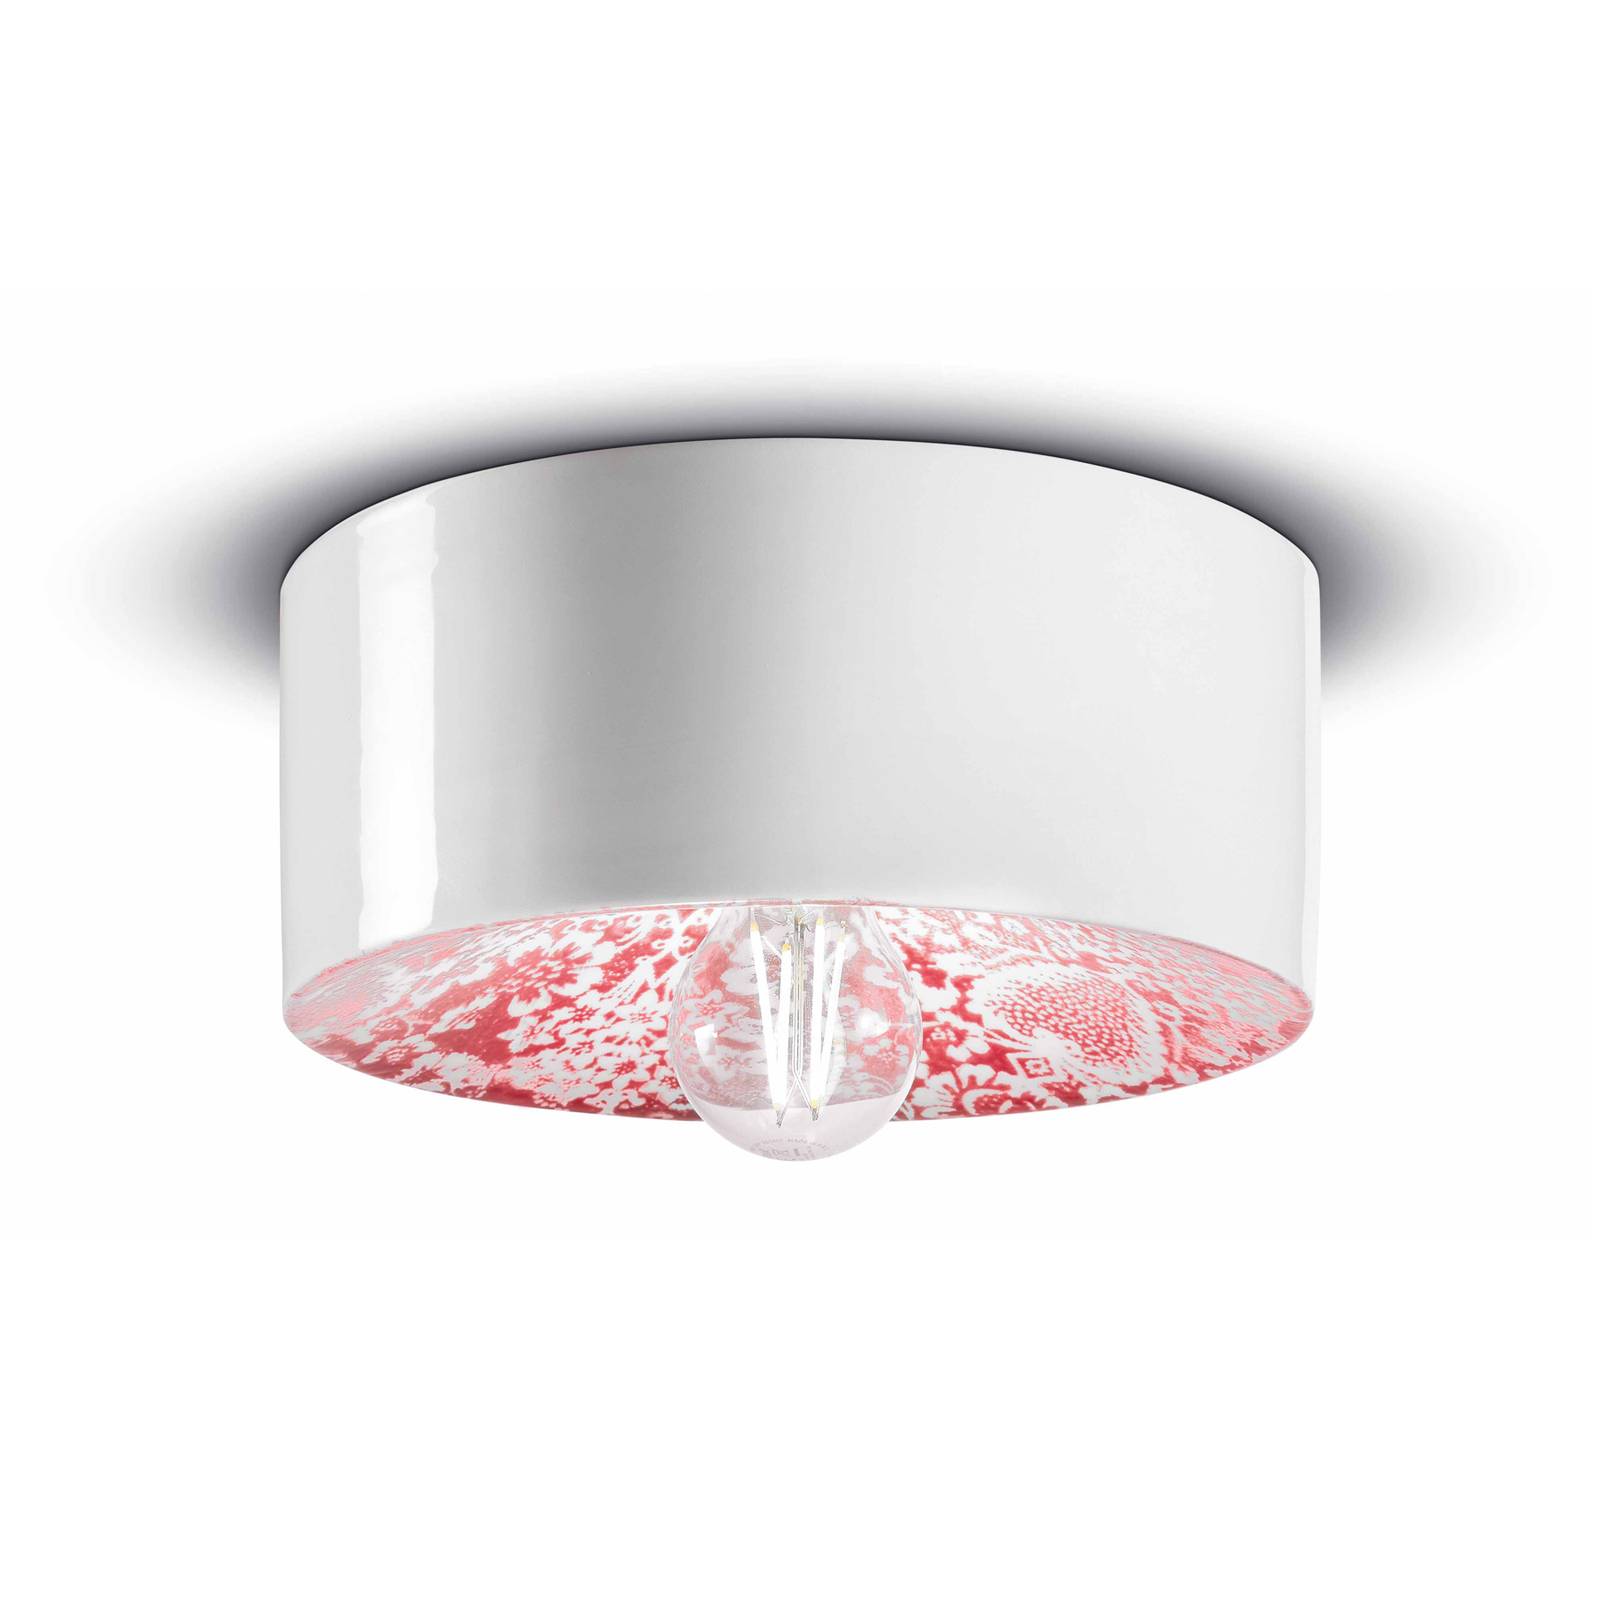 E-shop PI stropné svietidlo, kvetinový vzor Ø 25 cm červená/biela